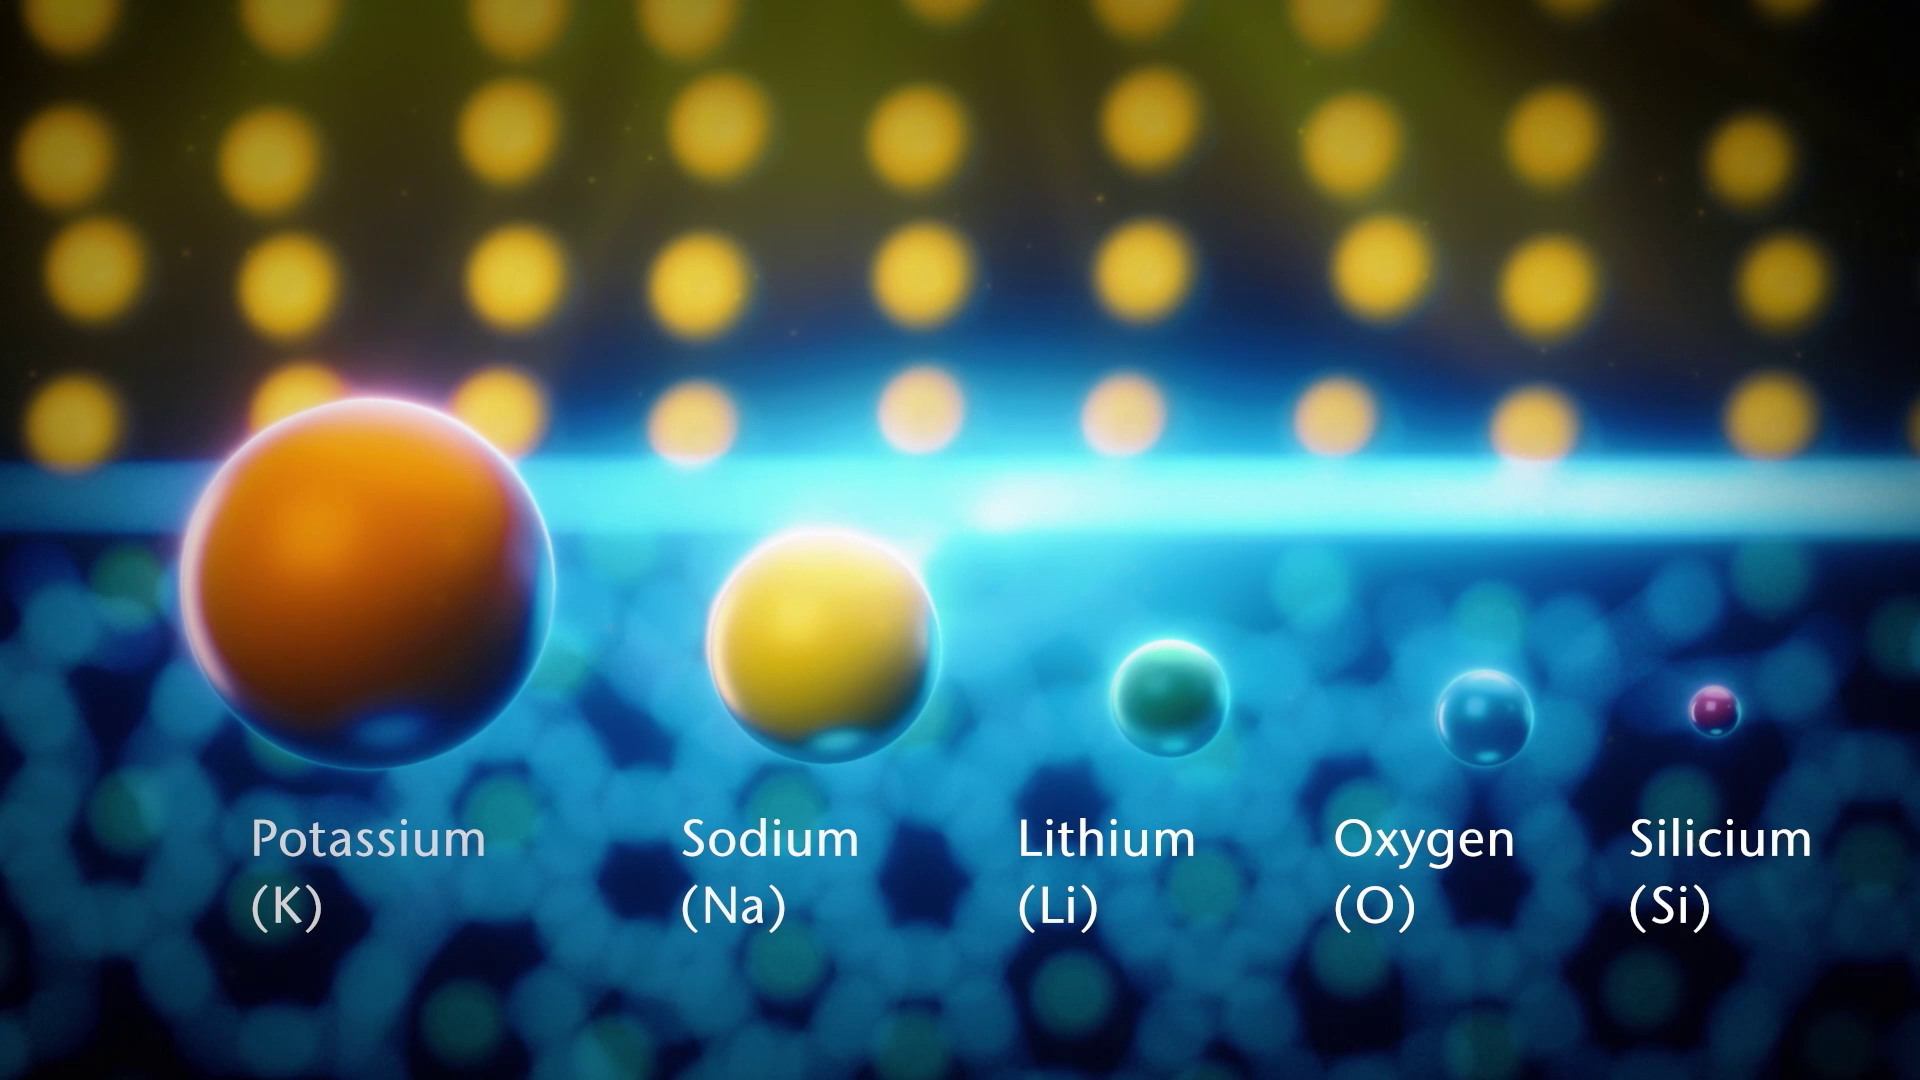 Das Bild zeigt verschiedene chemische Elemente wie Potassium, Sodium oder Lithium.